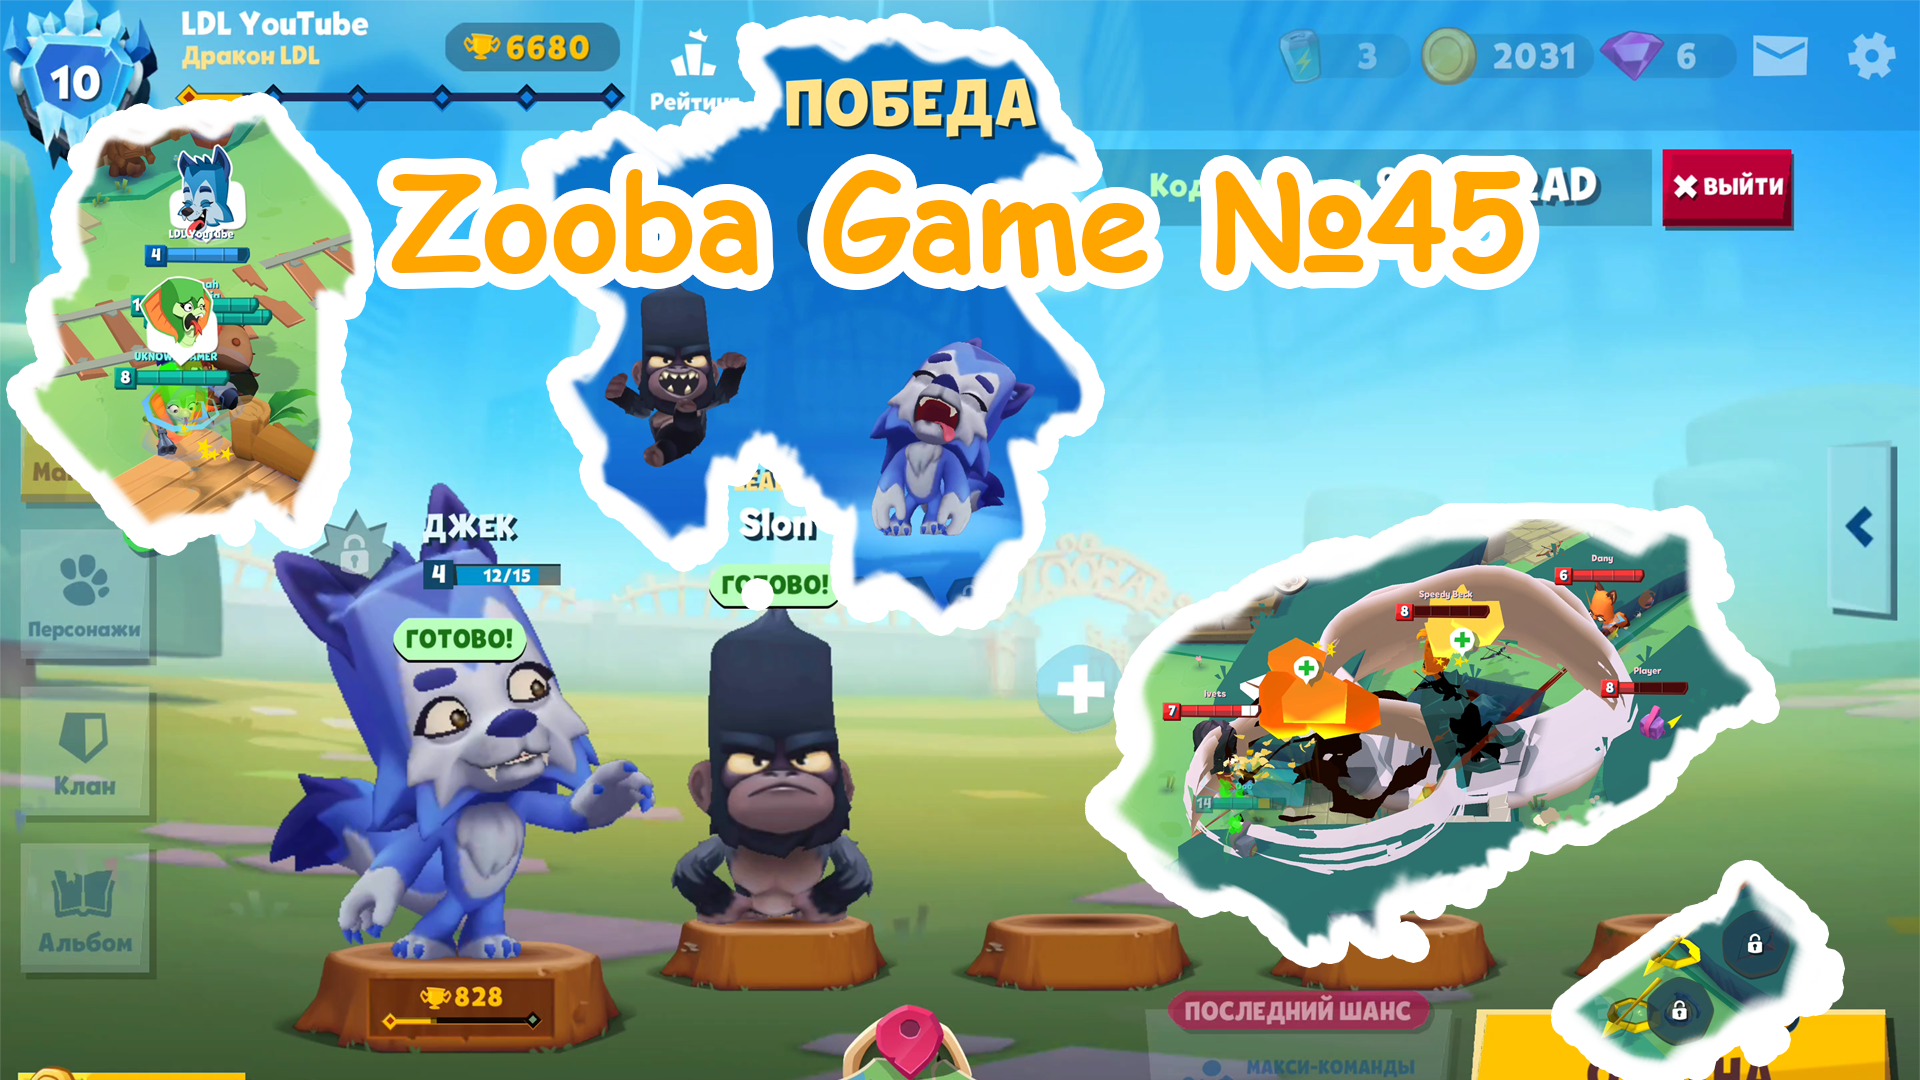 Zooba Game #45 #zooba